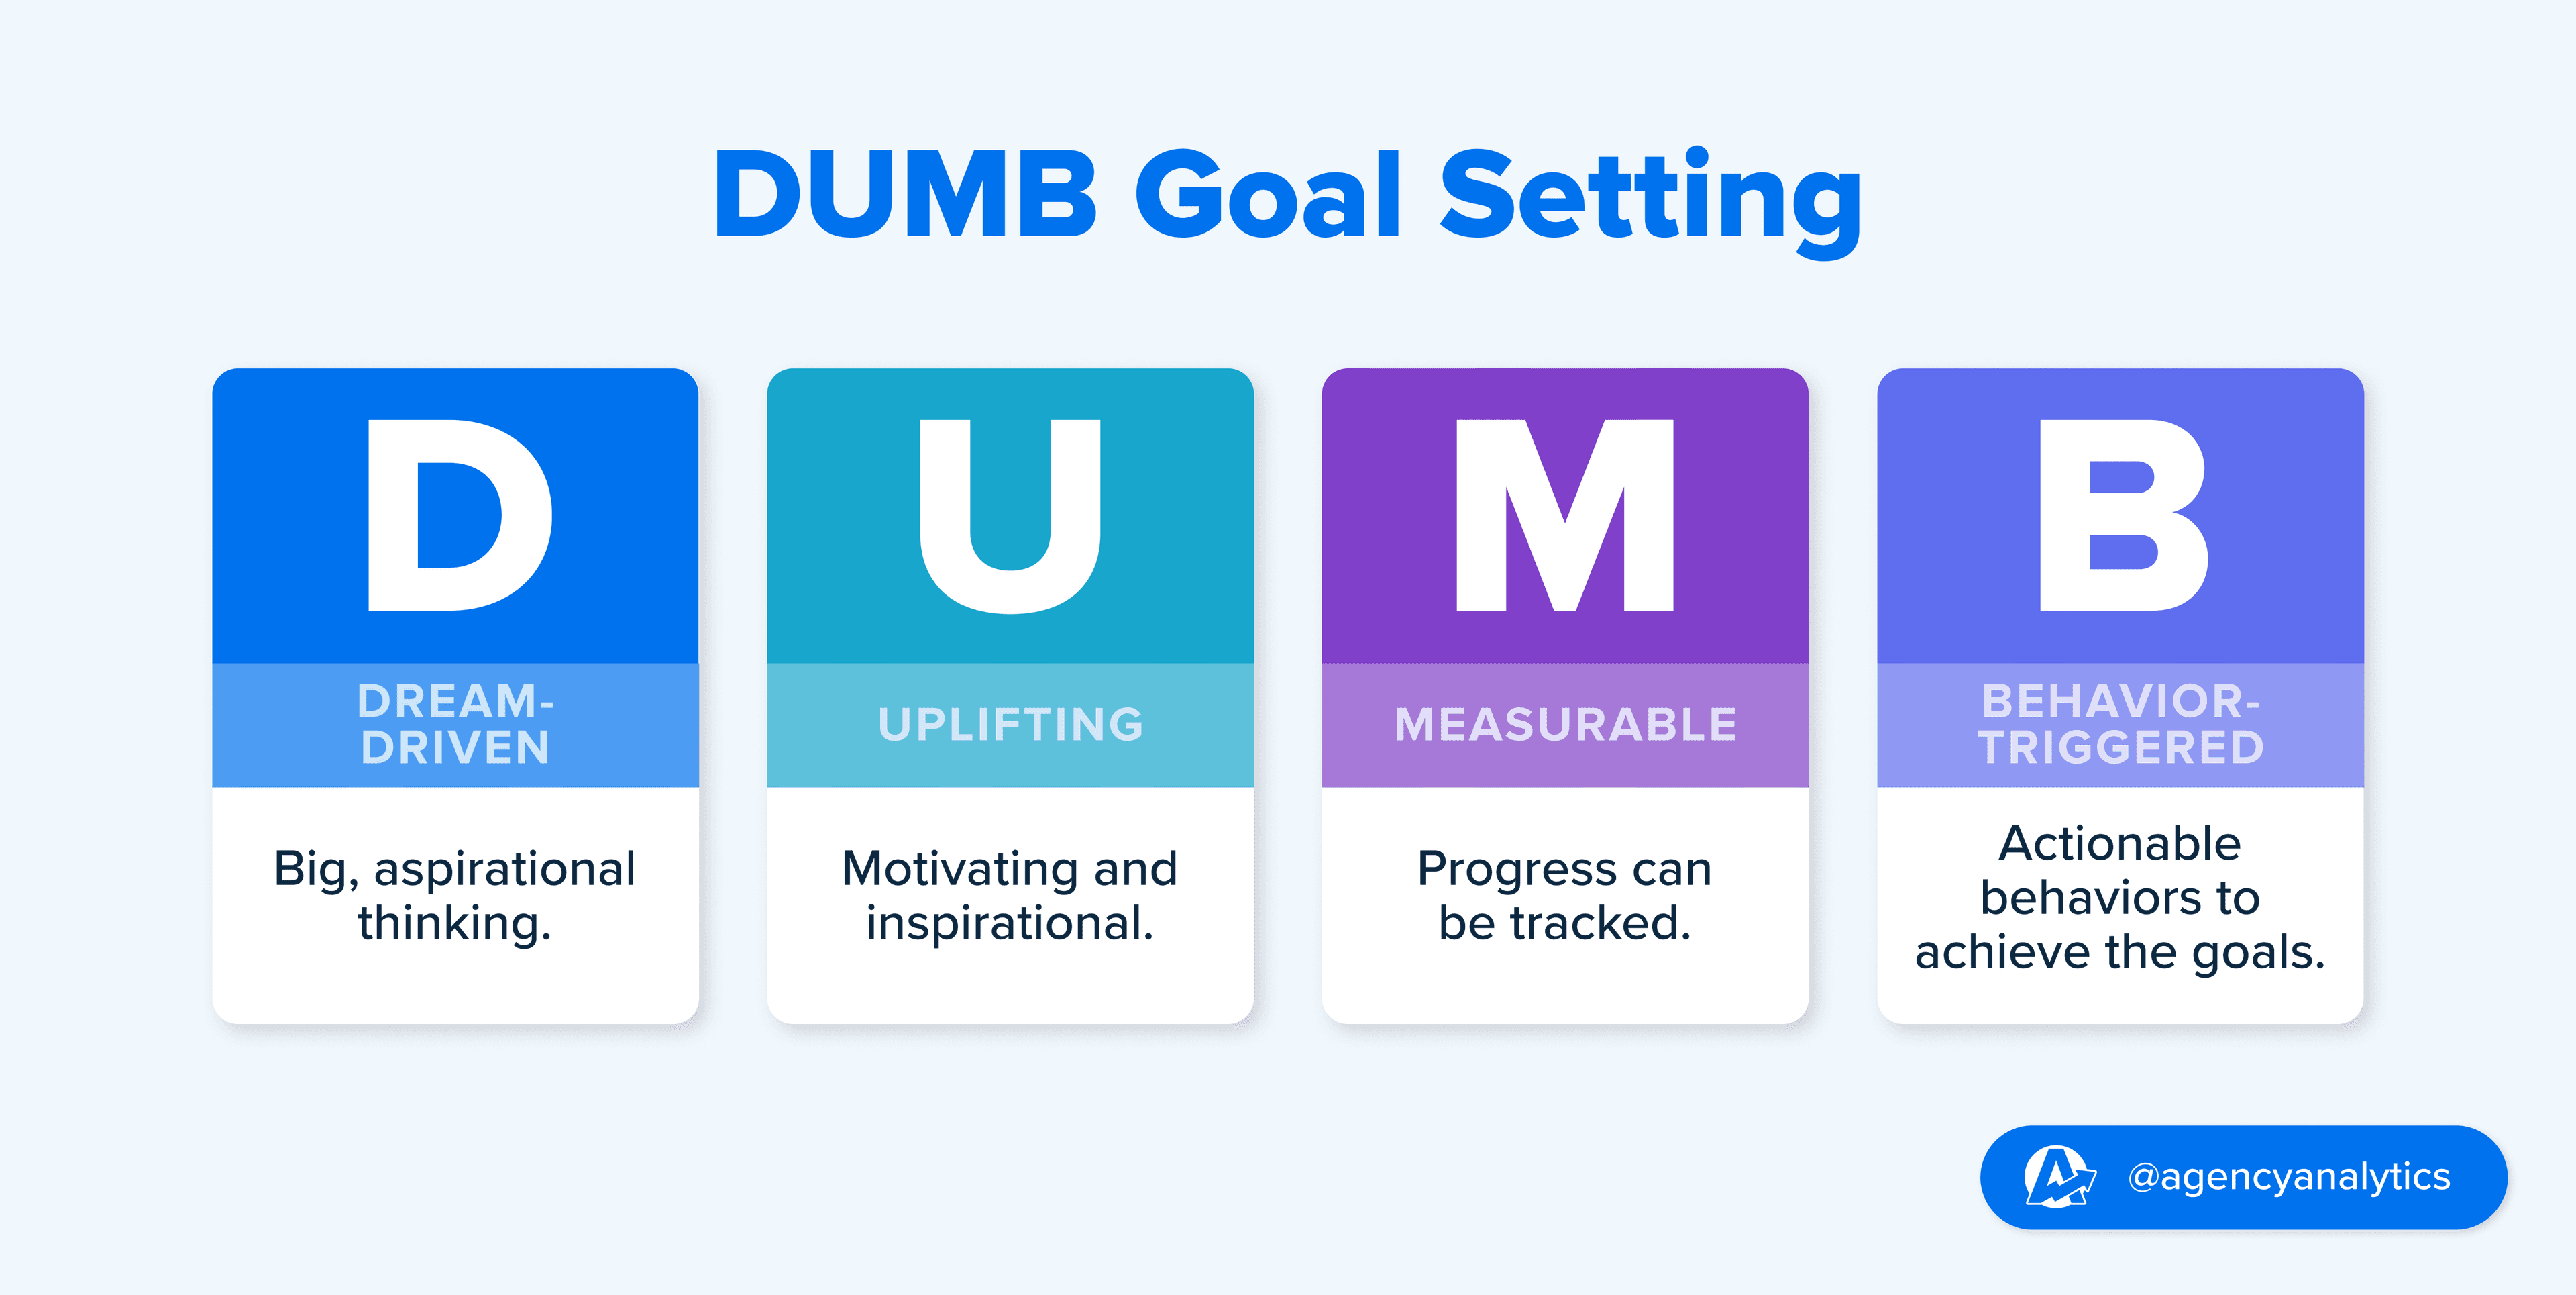 DUMB Goals Definition